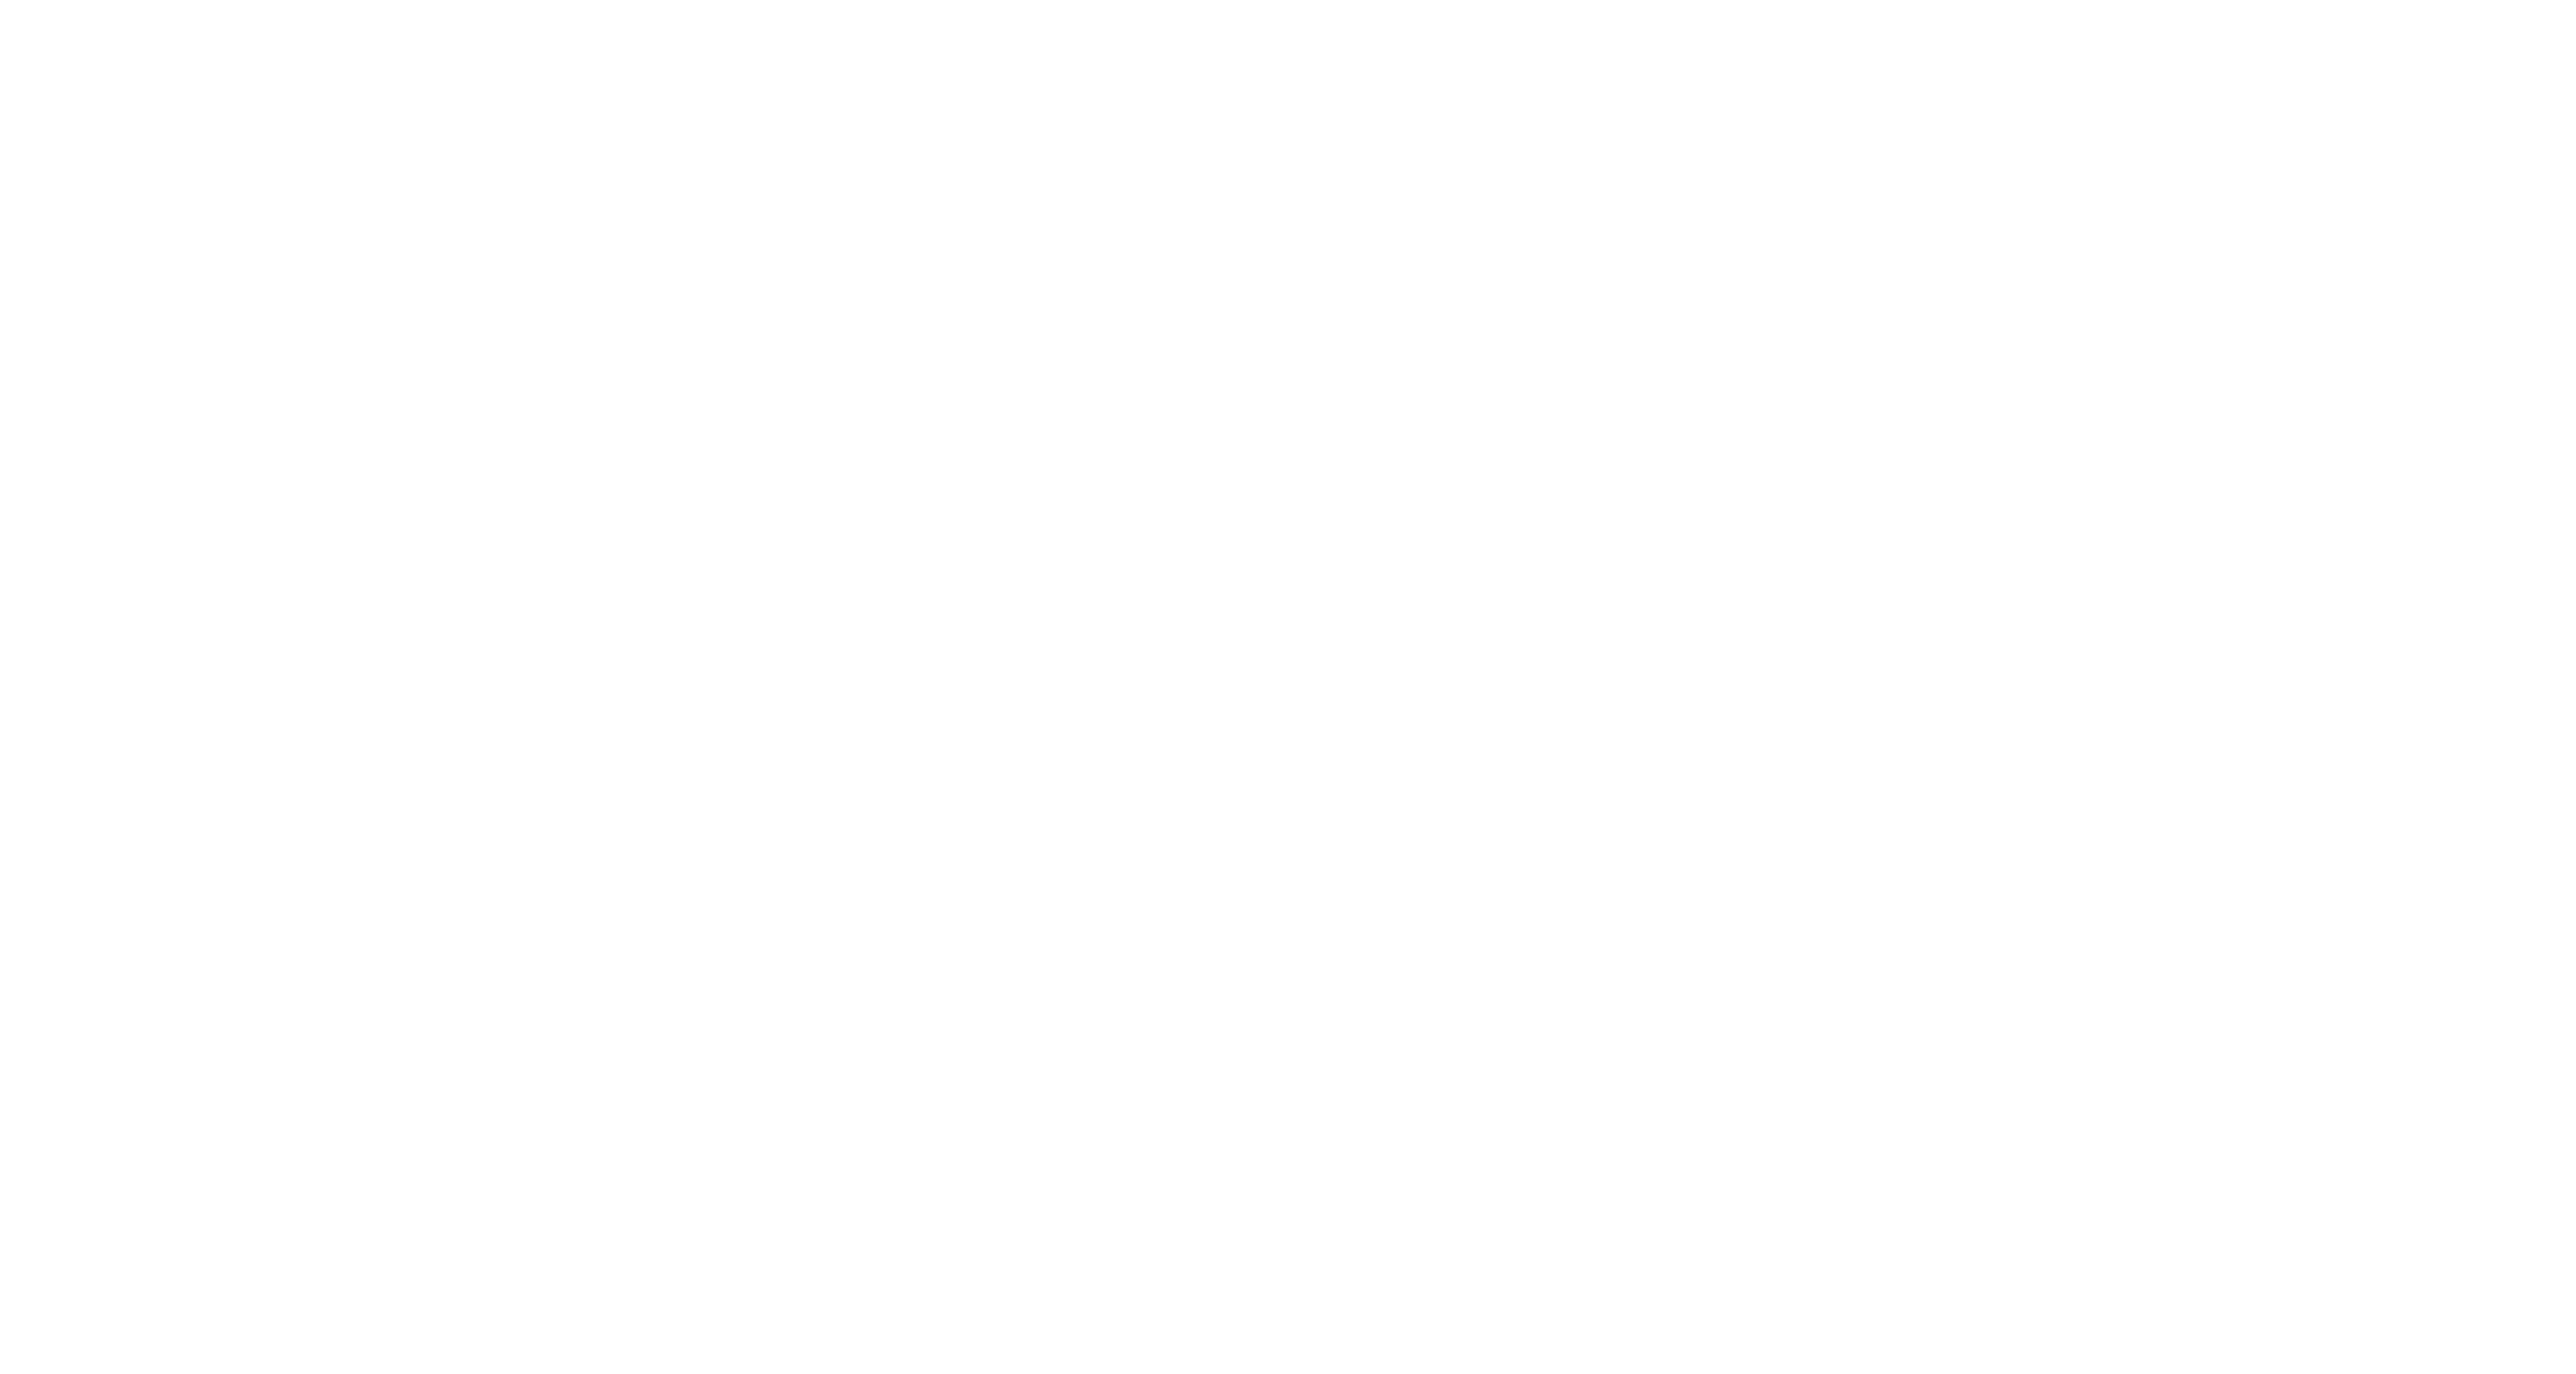 Kreistyle Design Studio